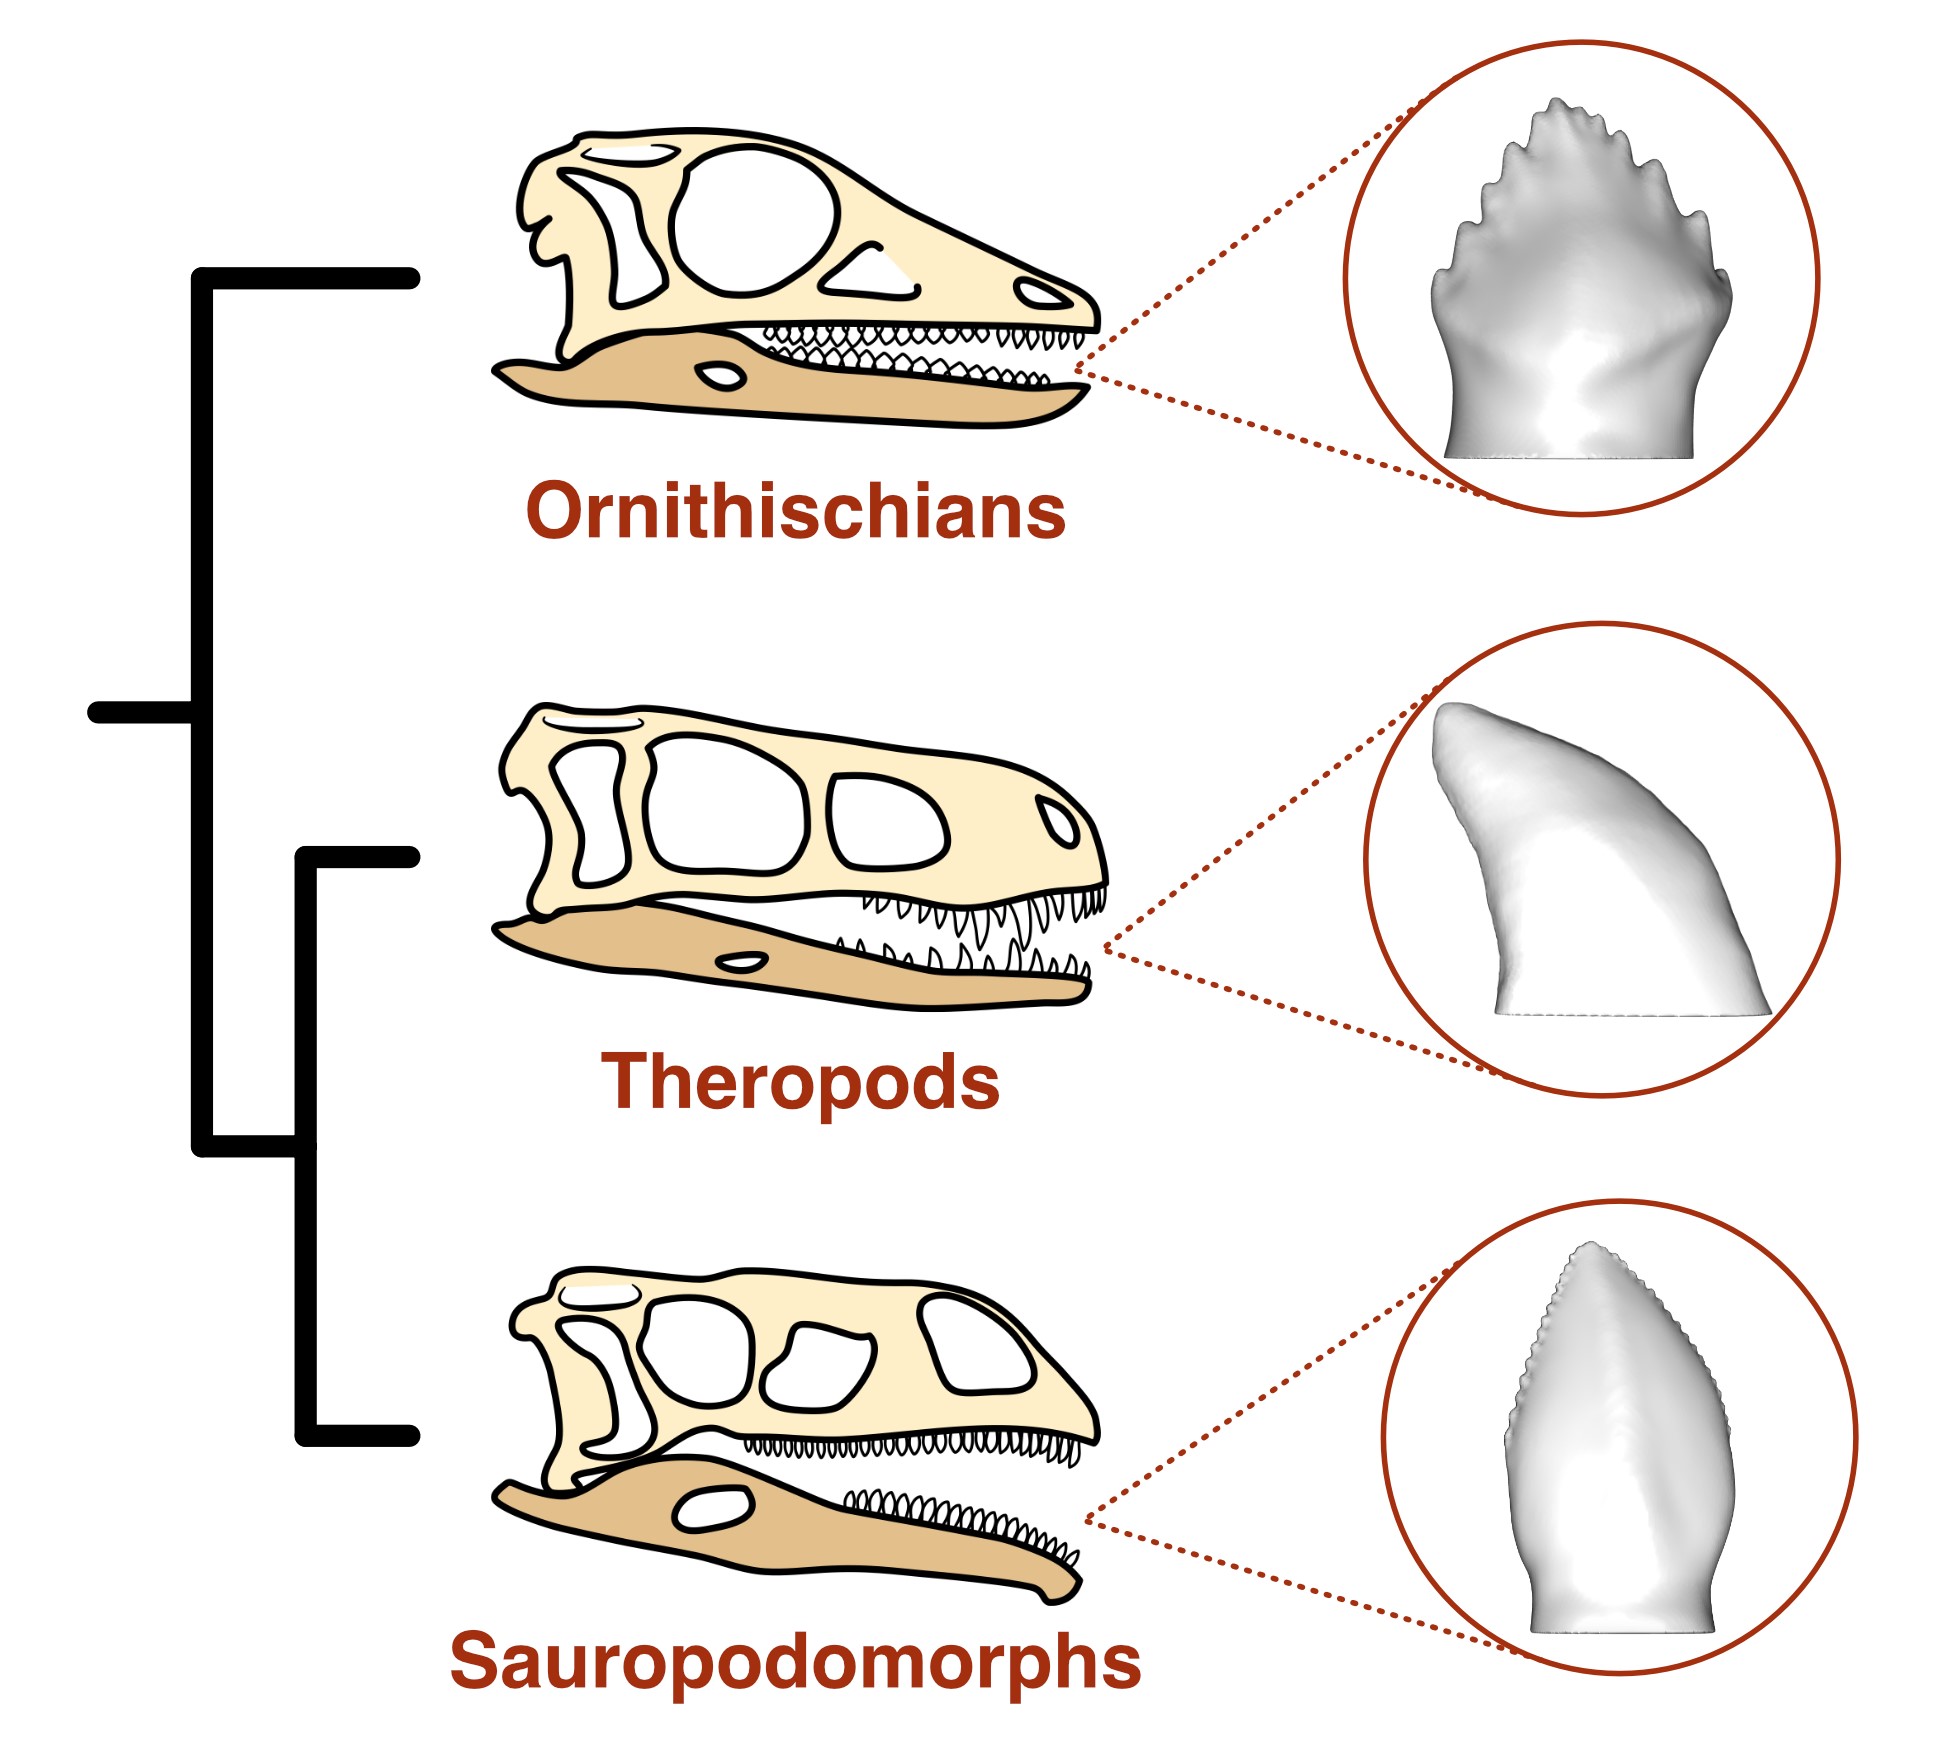 Los tres principales linajes de dinosaurios y sus formas dentales típicas (Antonio Ballell)